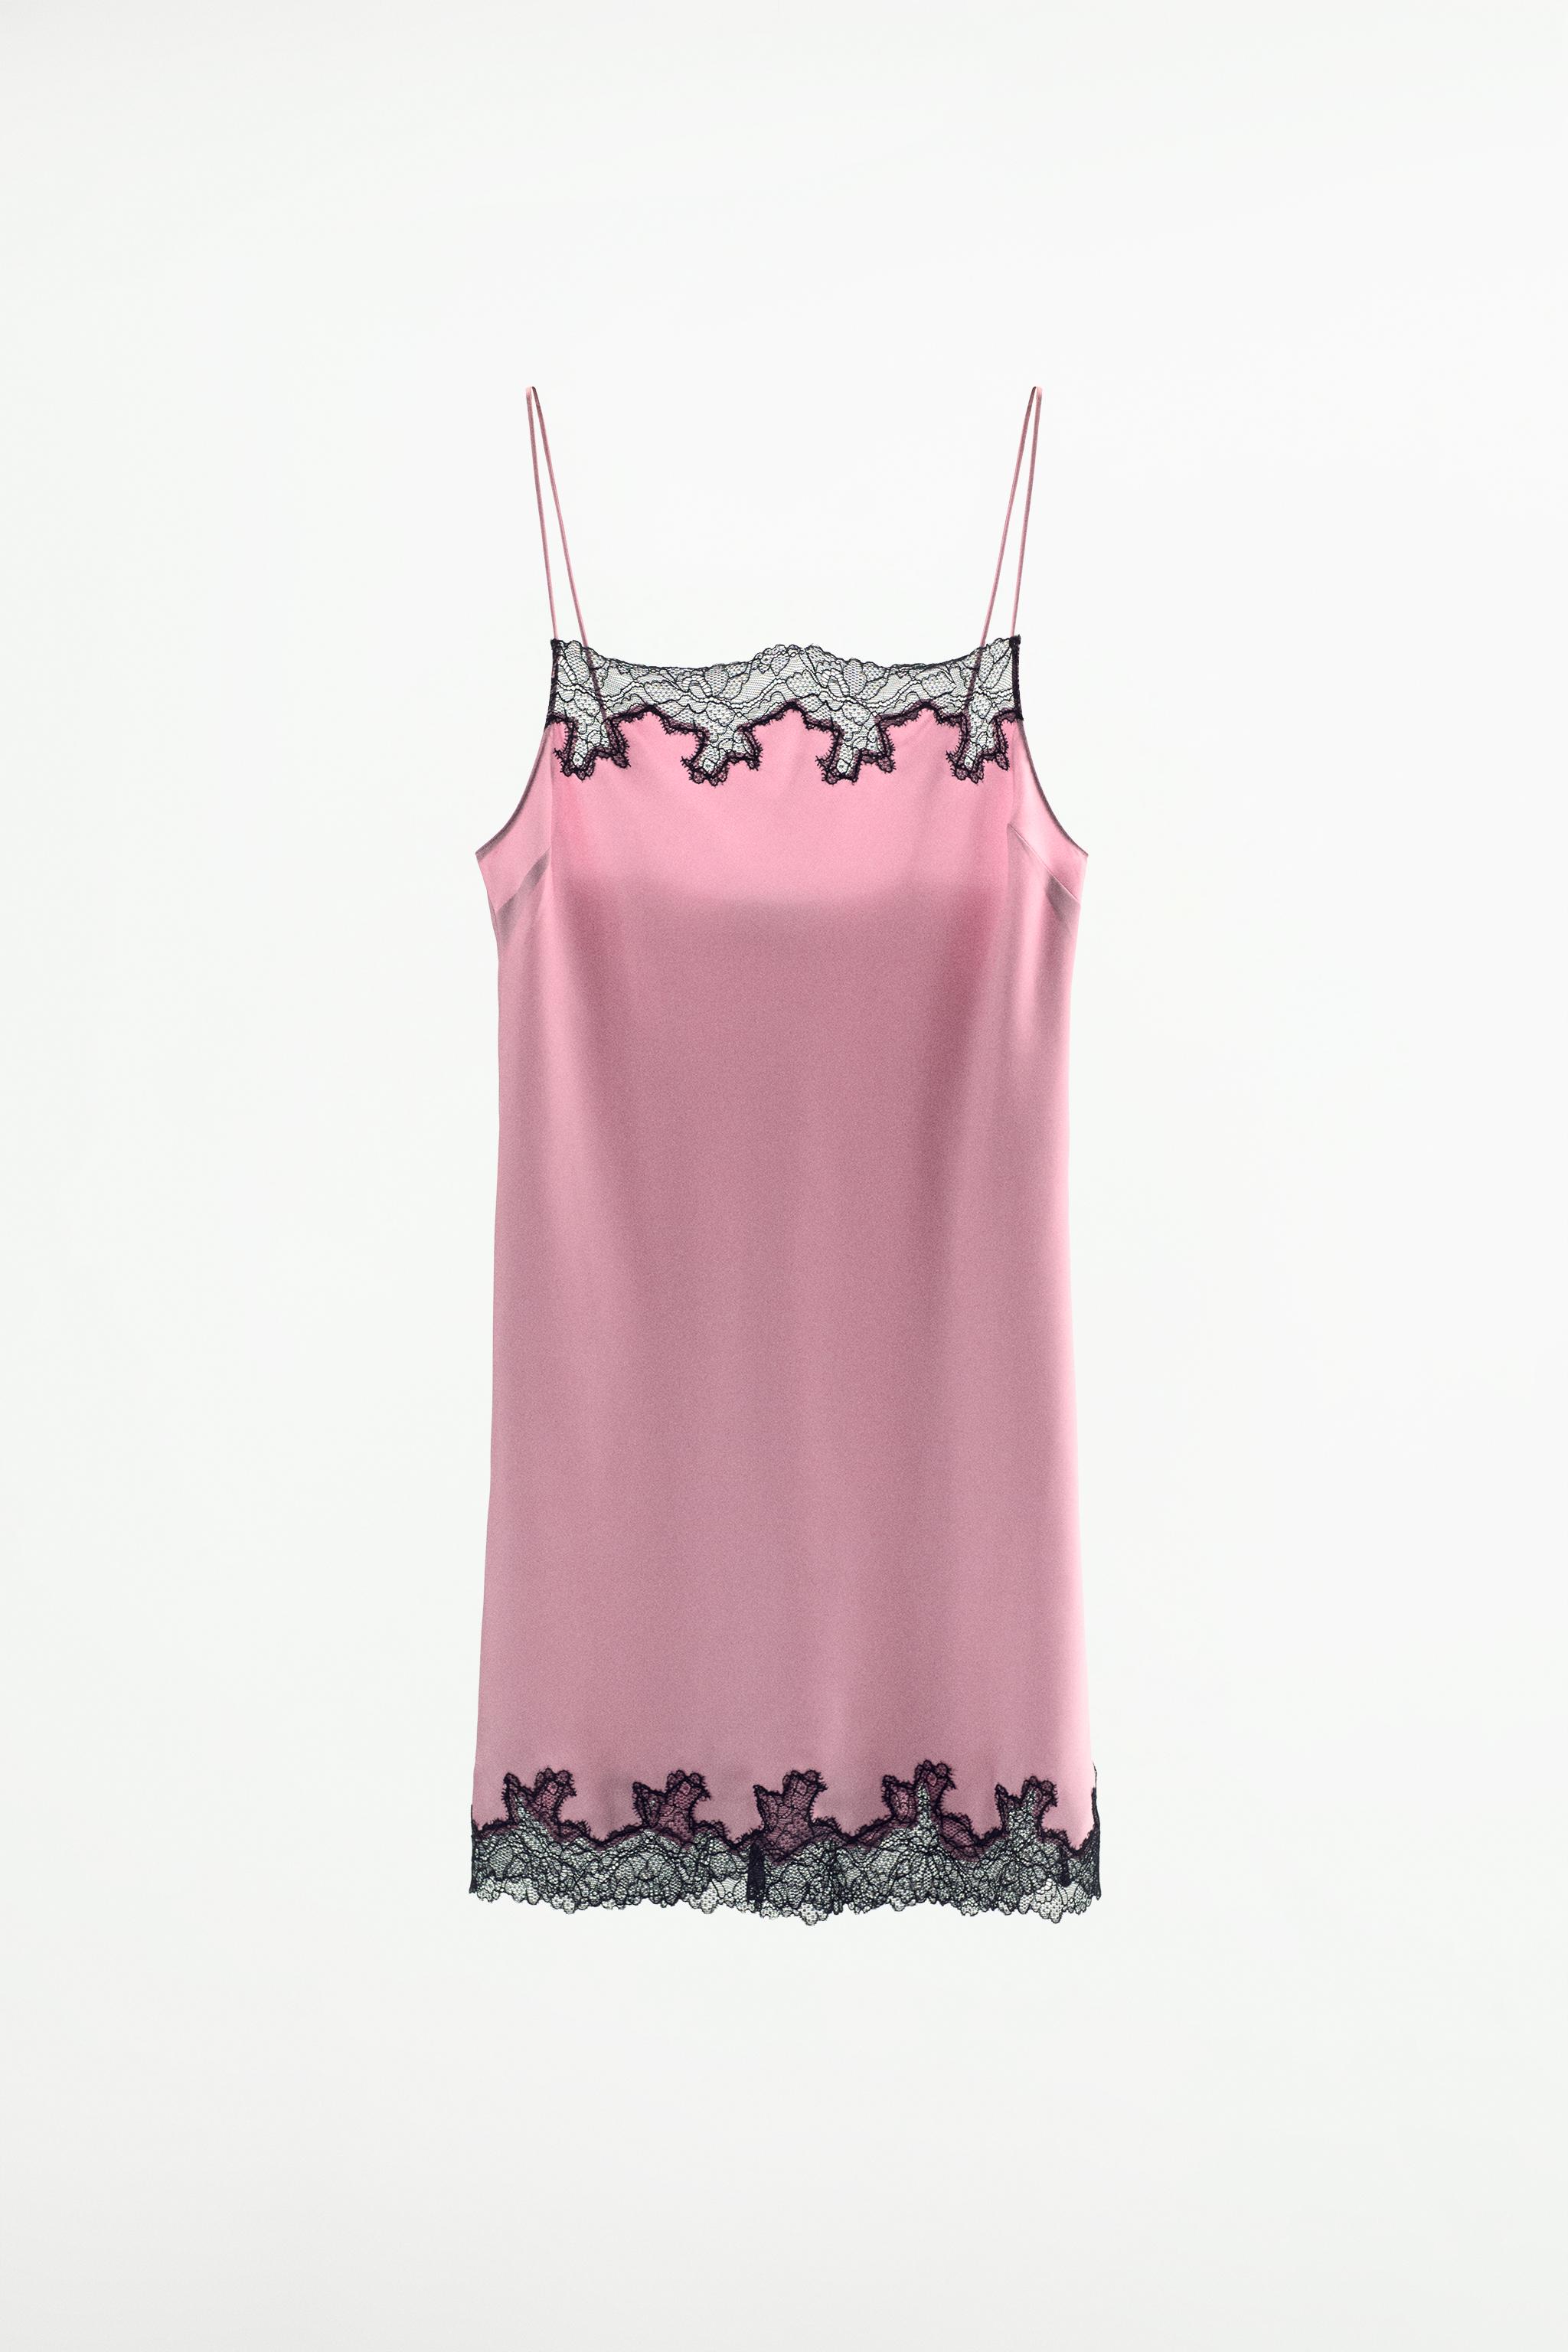 LACE SLIP DRESS - Dusty pink